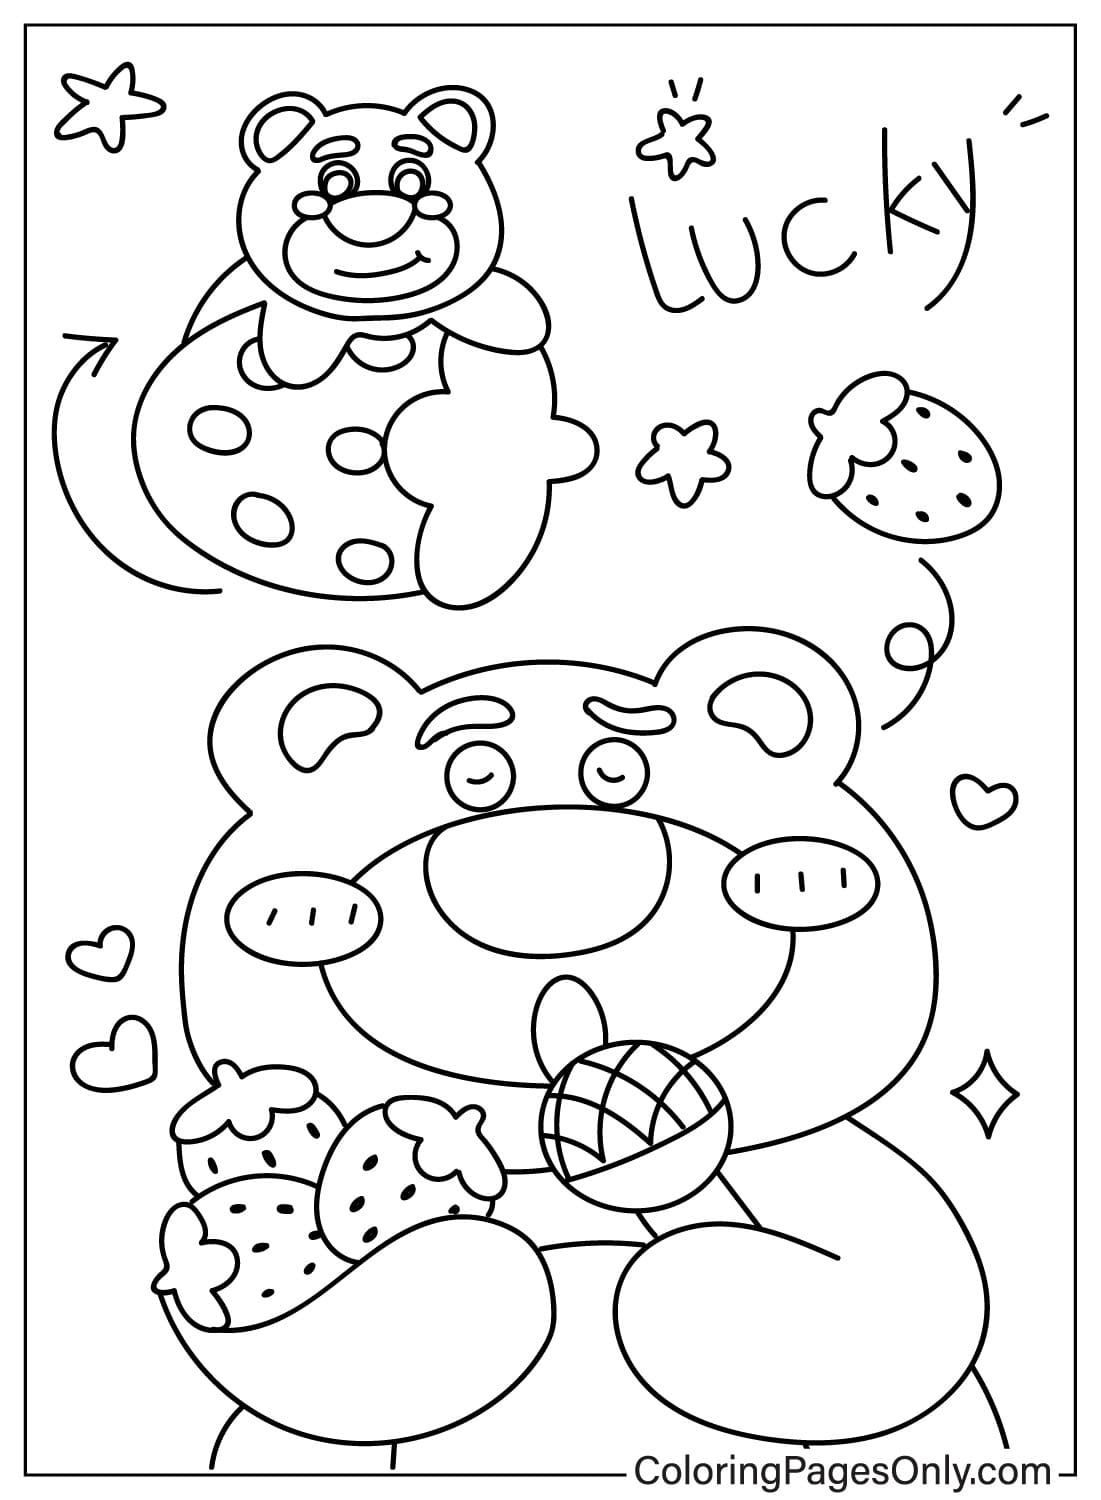 Раскраска Медведь Лотсо, которую можно распечатать от Лотсо Медведь